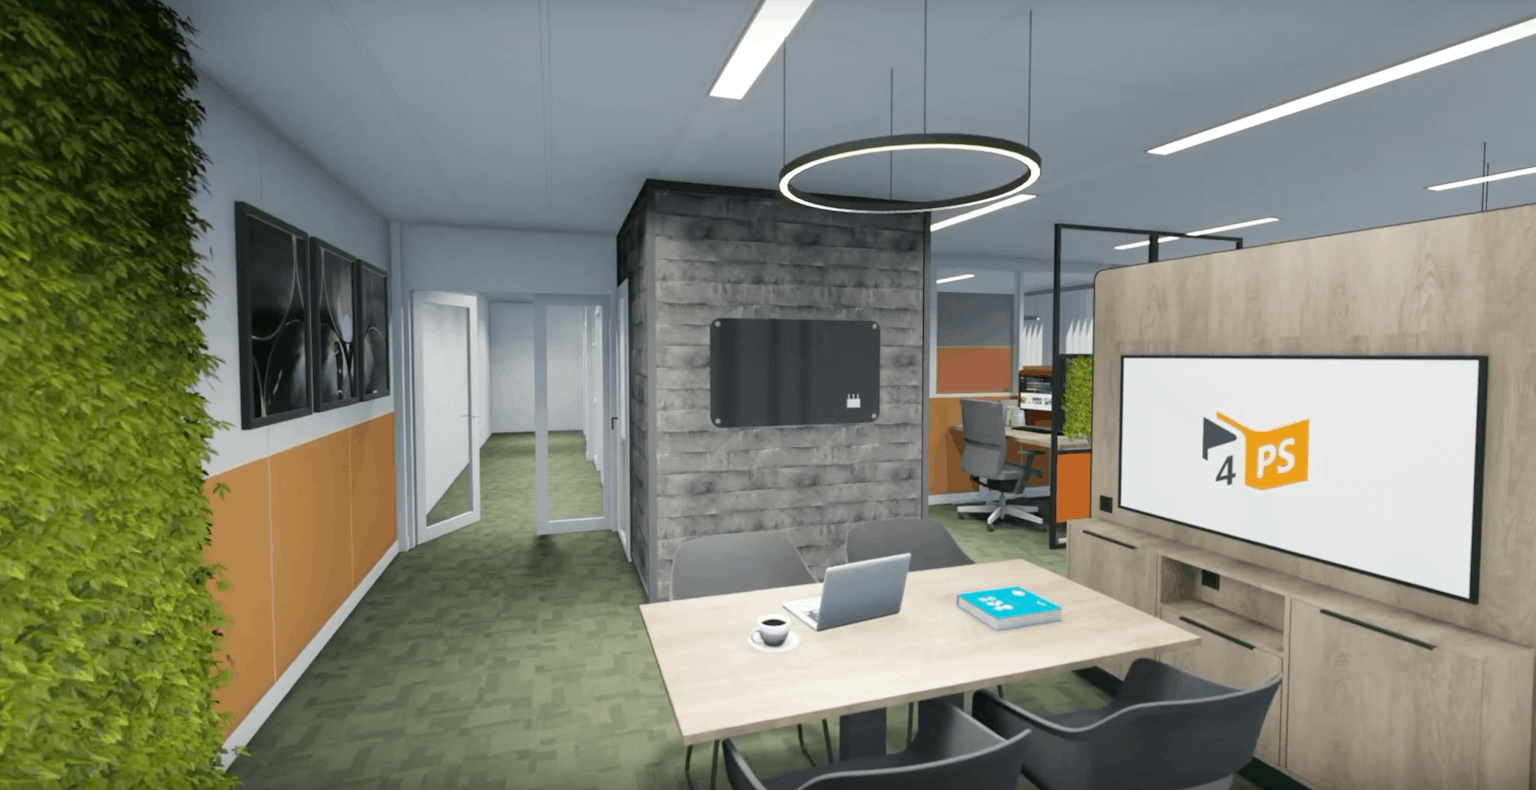 3D-render vasn een kantoorruimte met daarin een cirkel LED-lamp, boven een vergaderruimte en rechts een tv-scherm in een houten paneel. De wanden zijn bekleed met groene planten.